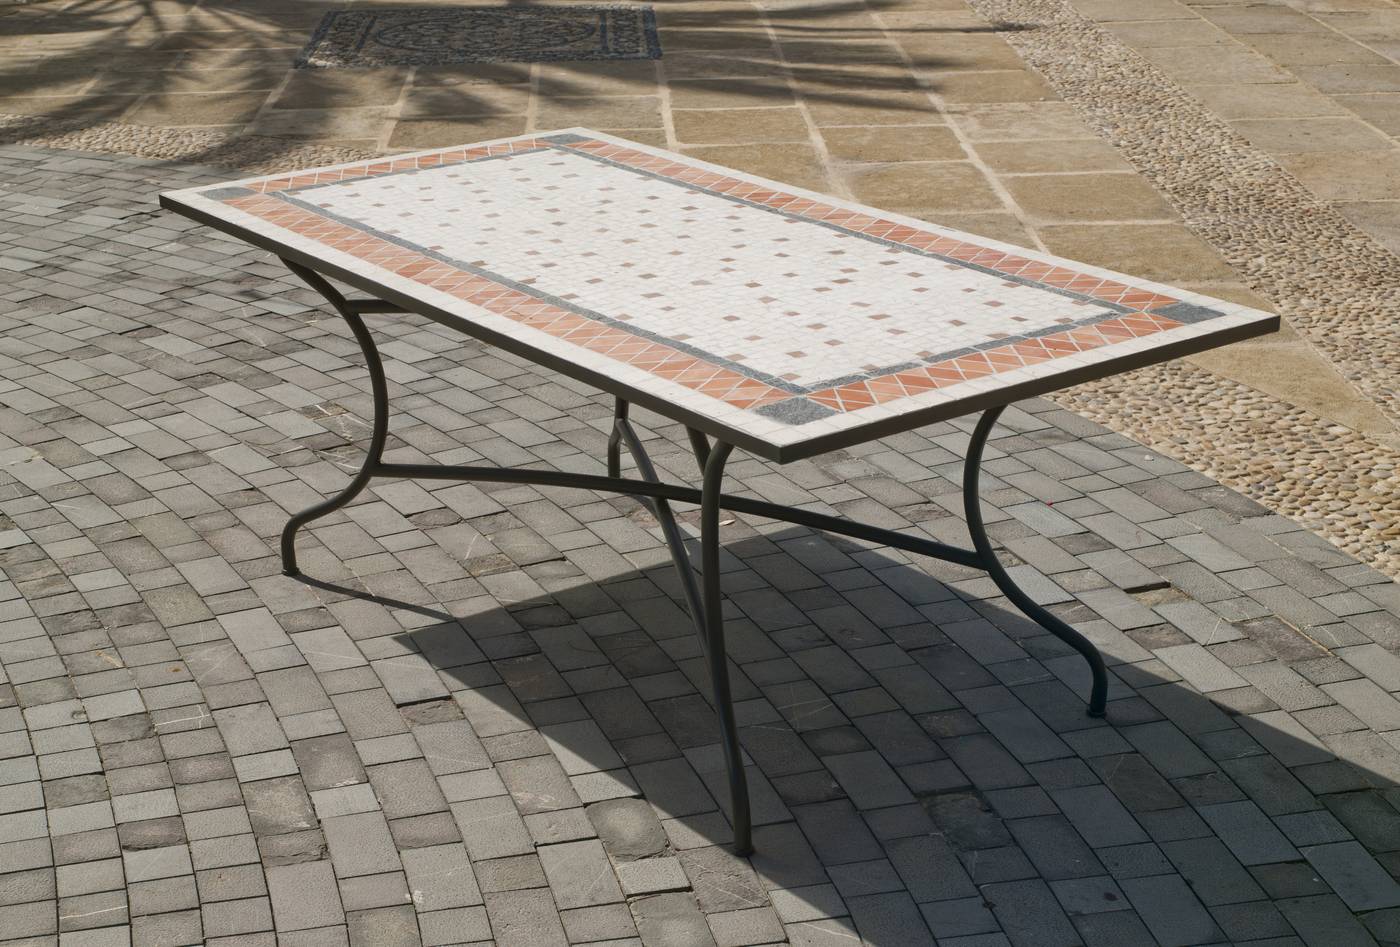 Conjunto Mosaico Roland-Bergamo 150-4 - Conjunto para terraza o jardín de forja color bronce: 1 mesa con tablero mosaico + 4 sillones de ratán sintético + 4 cojines.